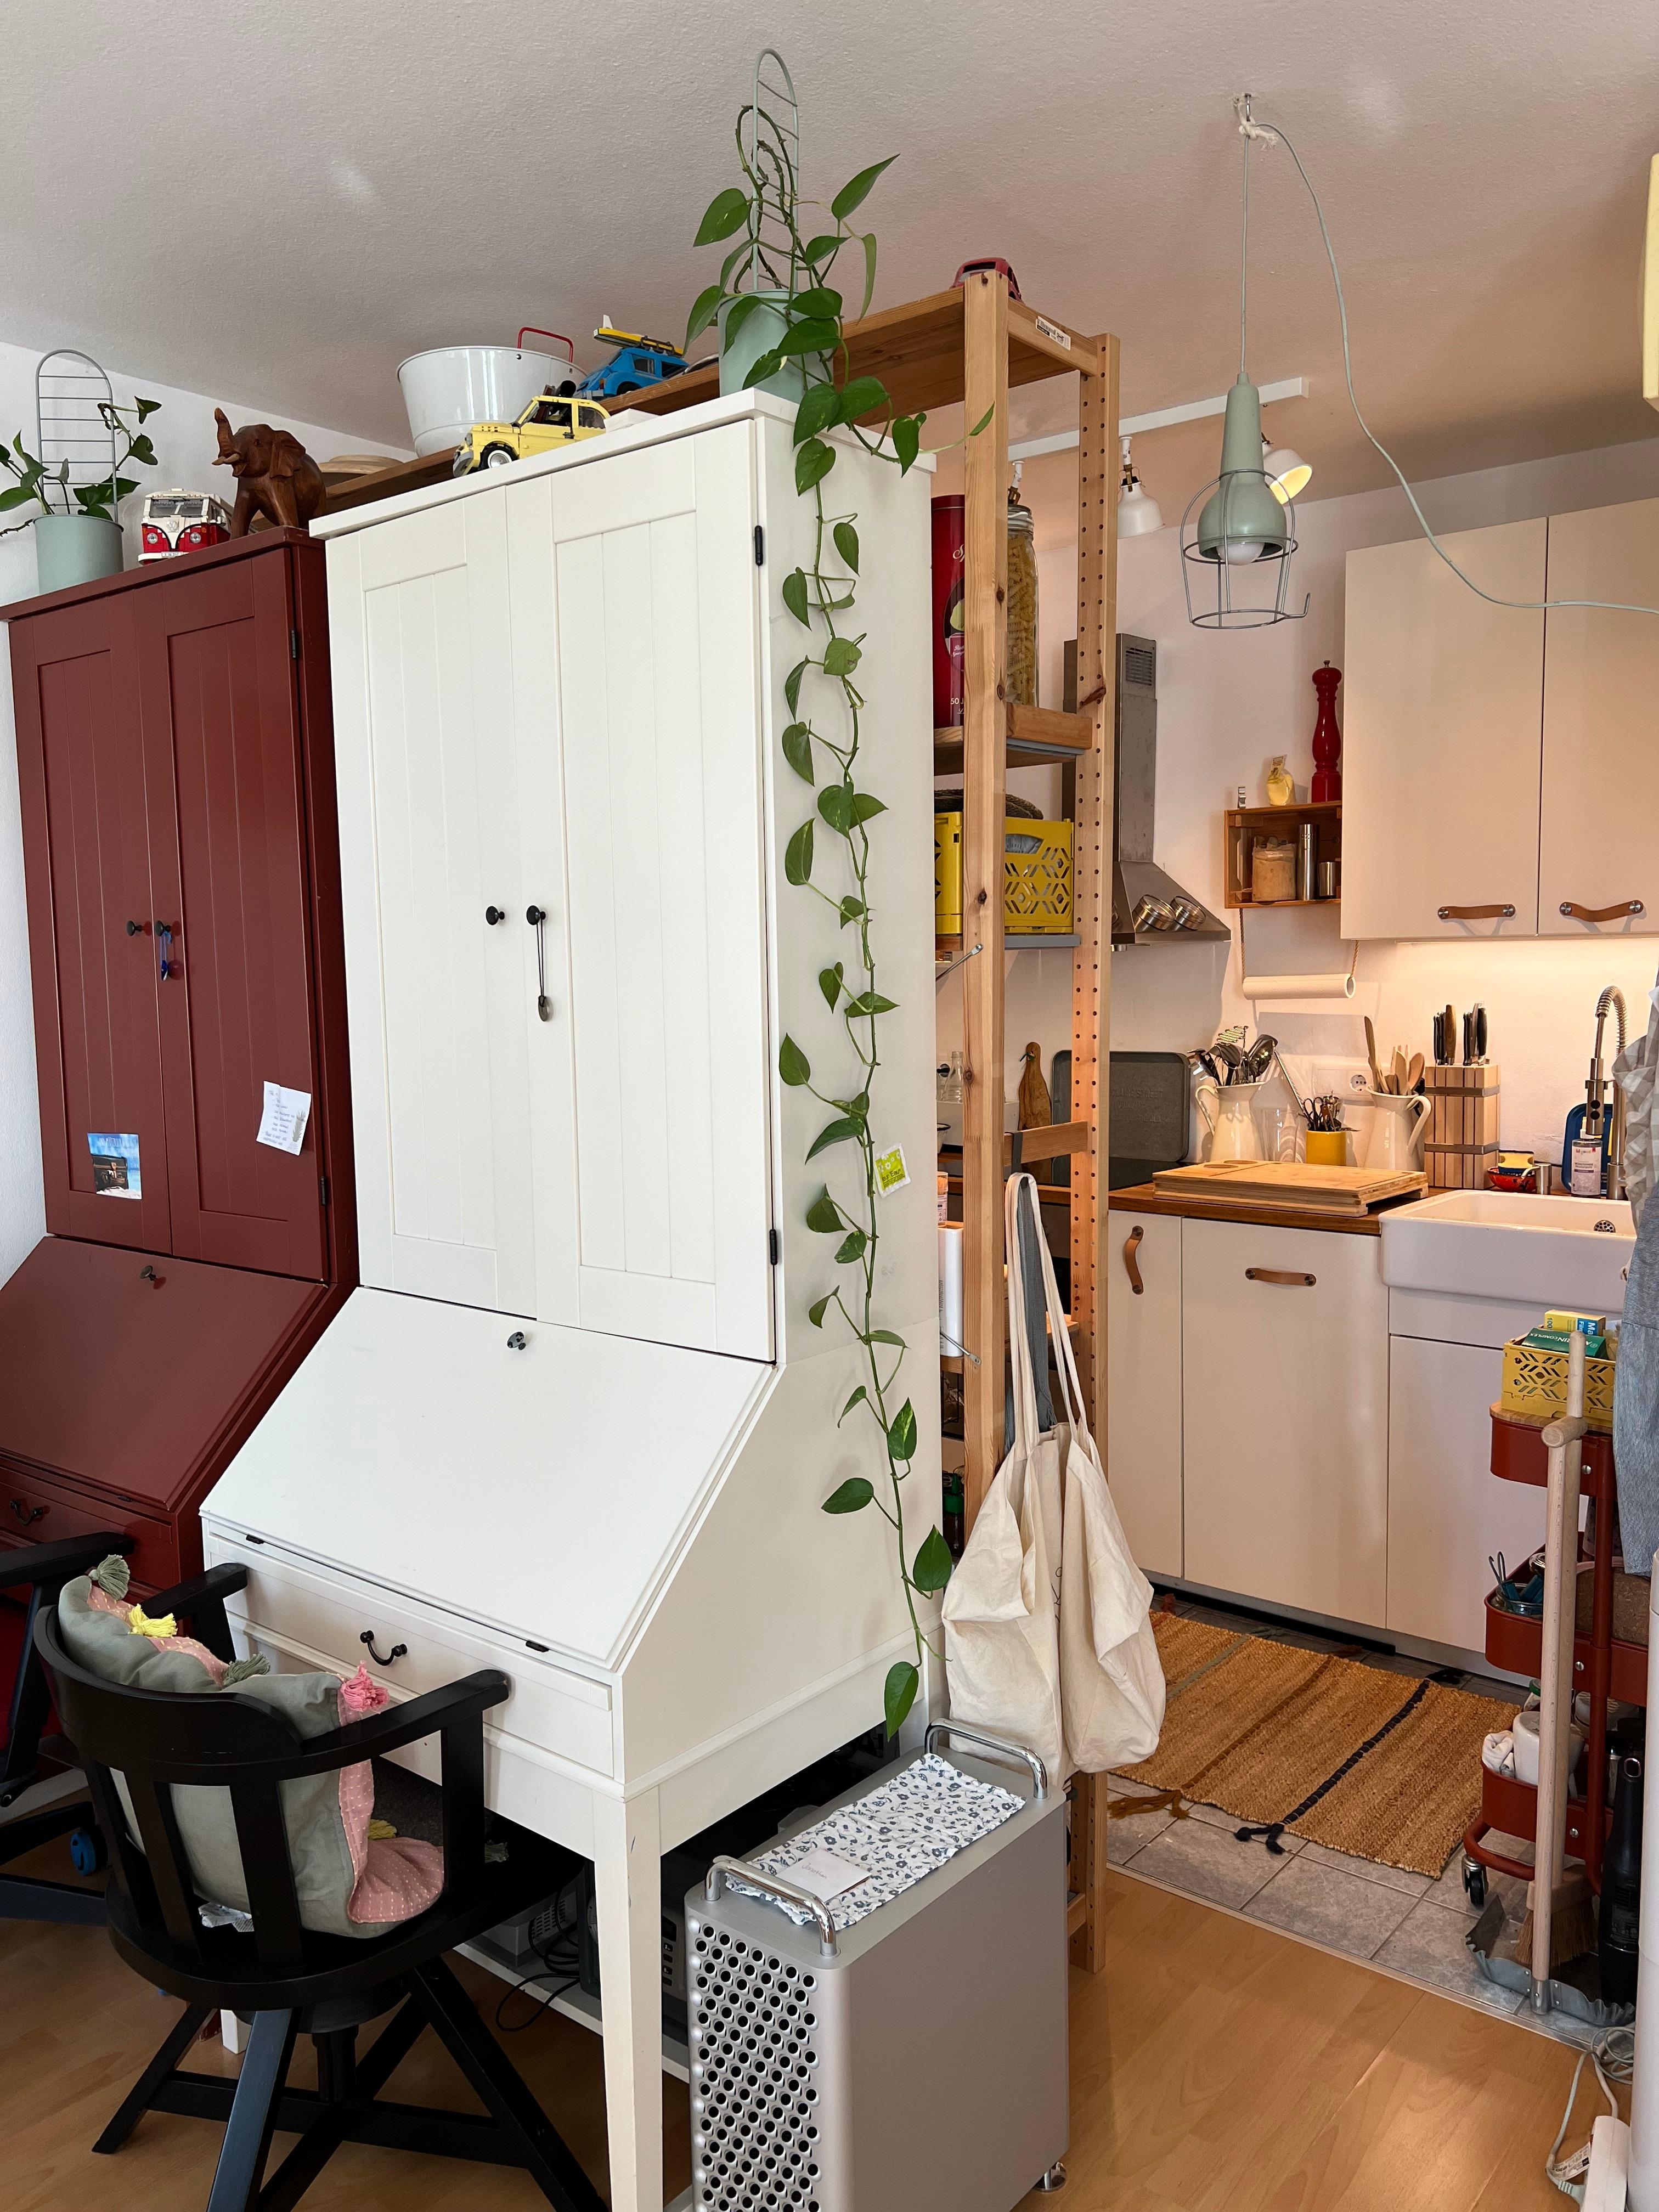 Küche und Büro.
Durch die #ivar wand und unsere Sekretäre habe ich eine art eigenen Raum für unsere Küche geschaffen 😊
#küche #ikea #sekretär #homeoffice #büro #tinyhome